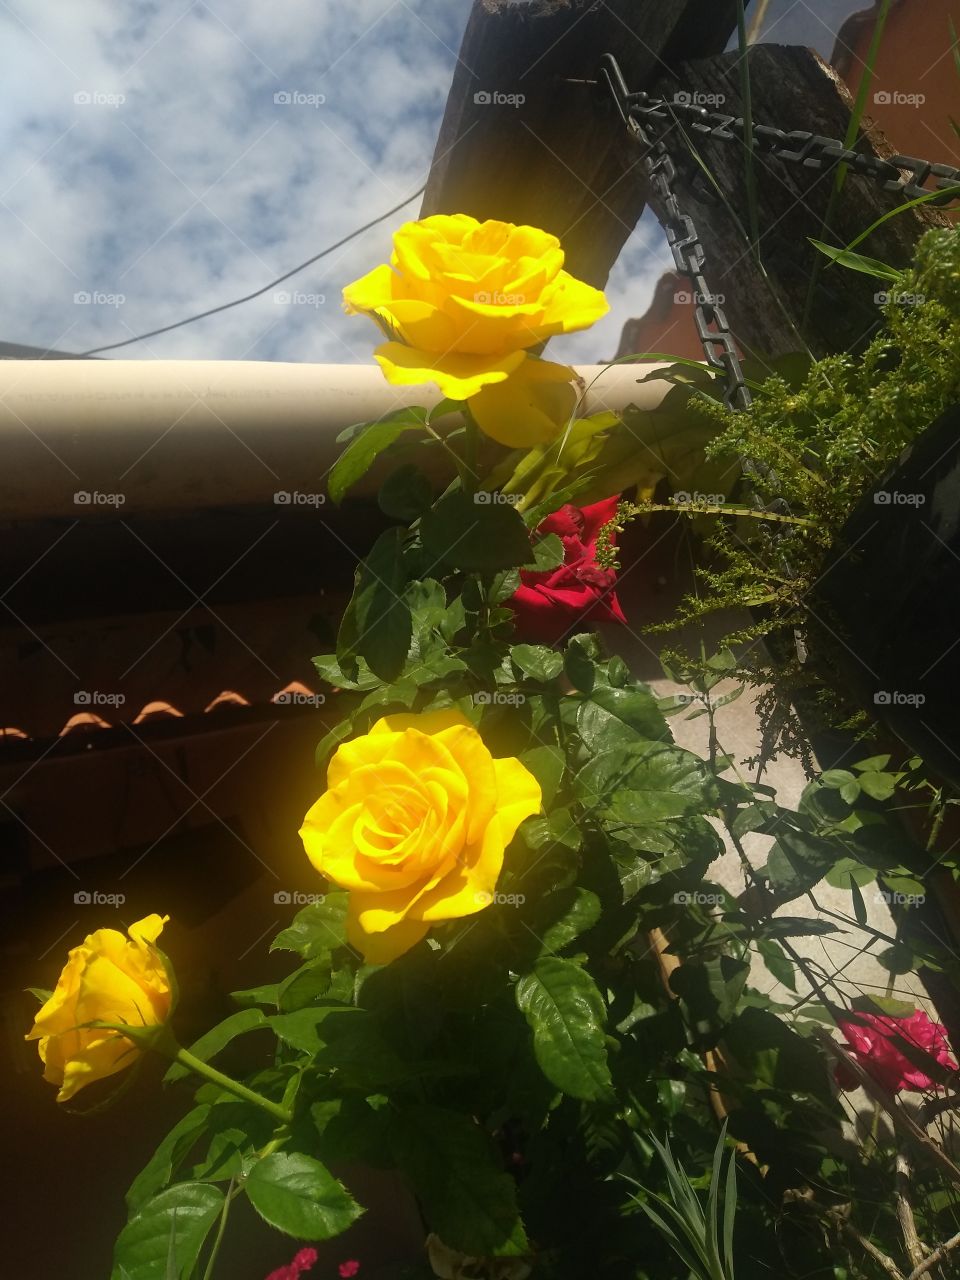 Colorful garden with red and yellow roses.../ Jardim colorido com rosas vermelhas e amarelas...